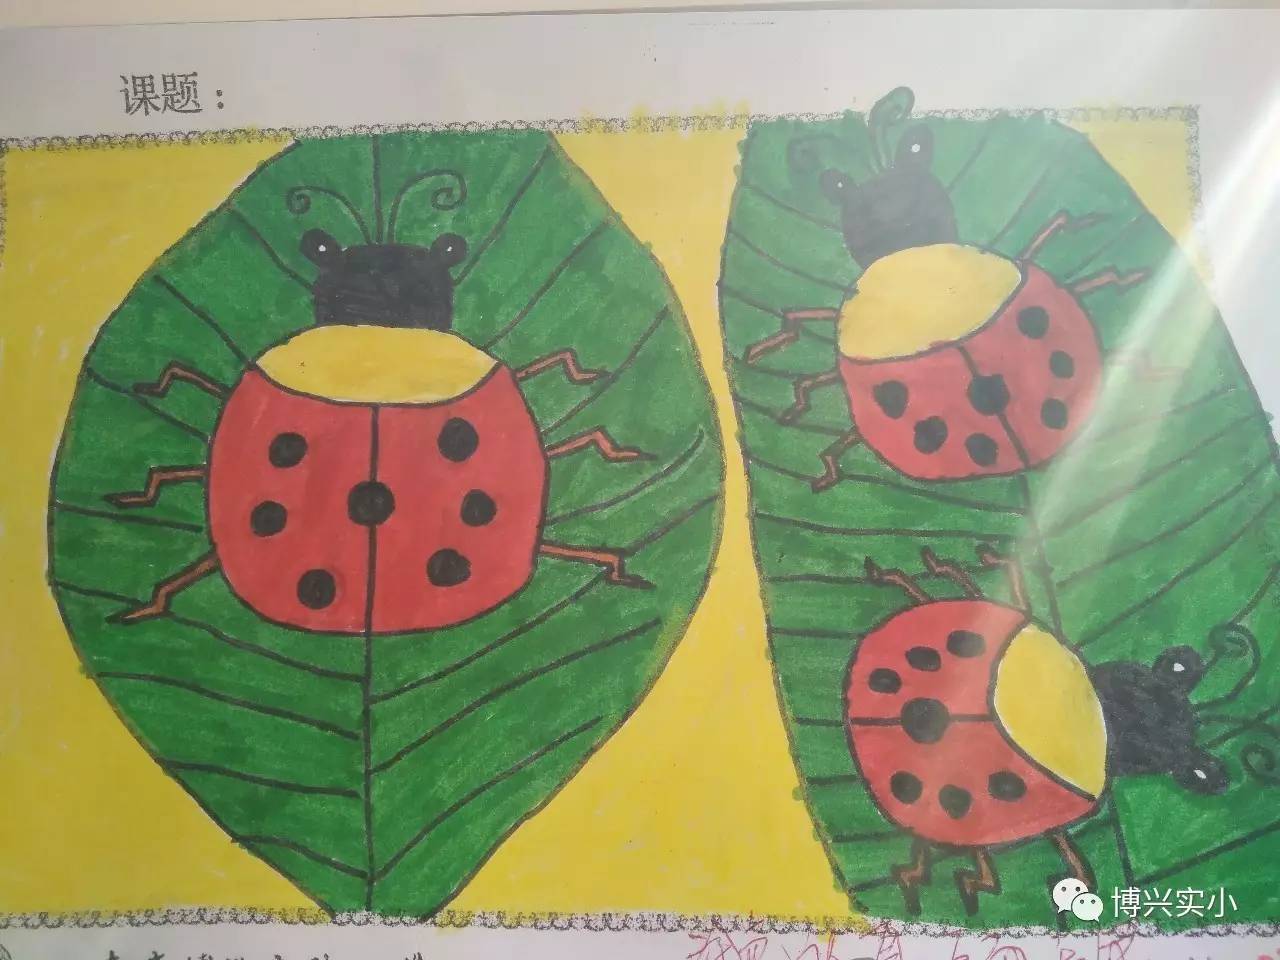 少儿简单儿童画 好看简笔画七星瓢虫的画法图解 咿咿呀呀儿童手工网